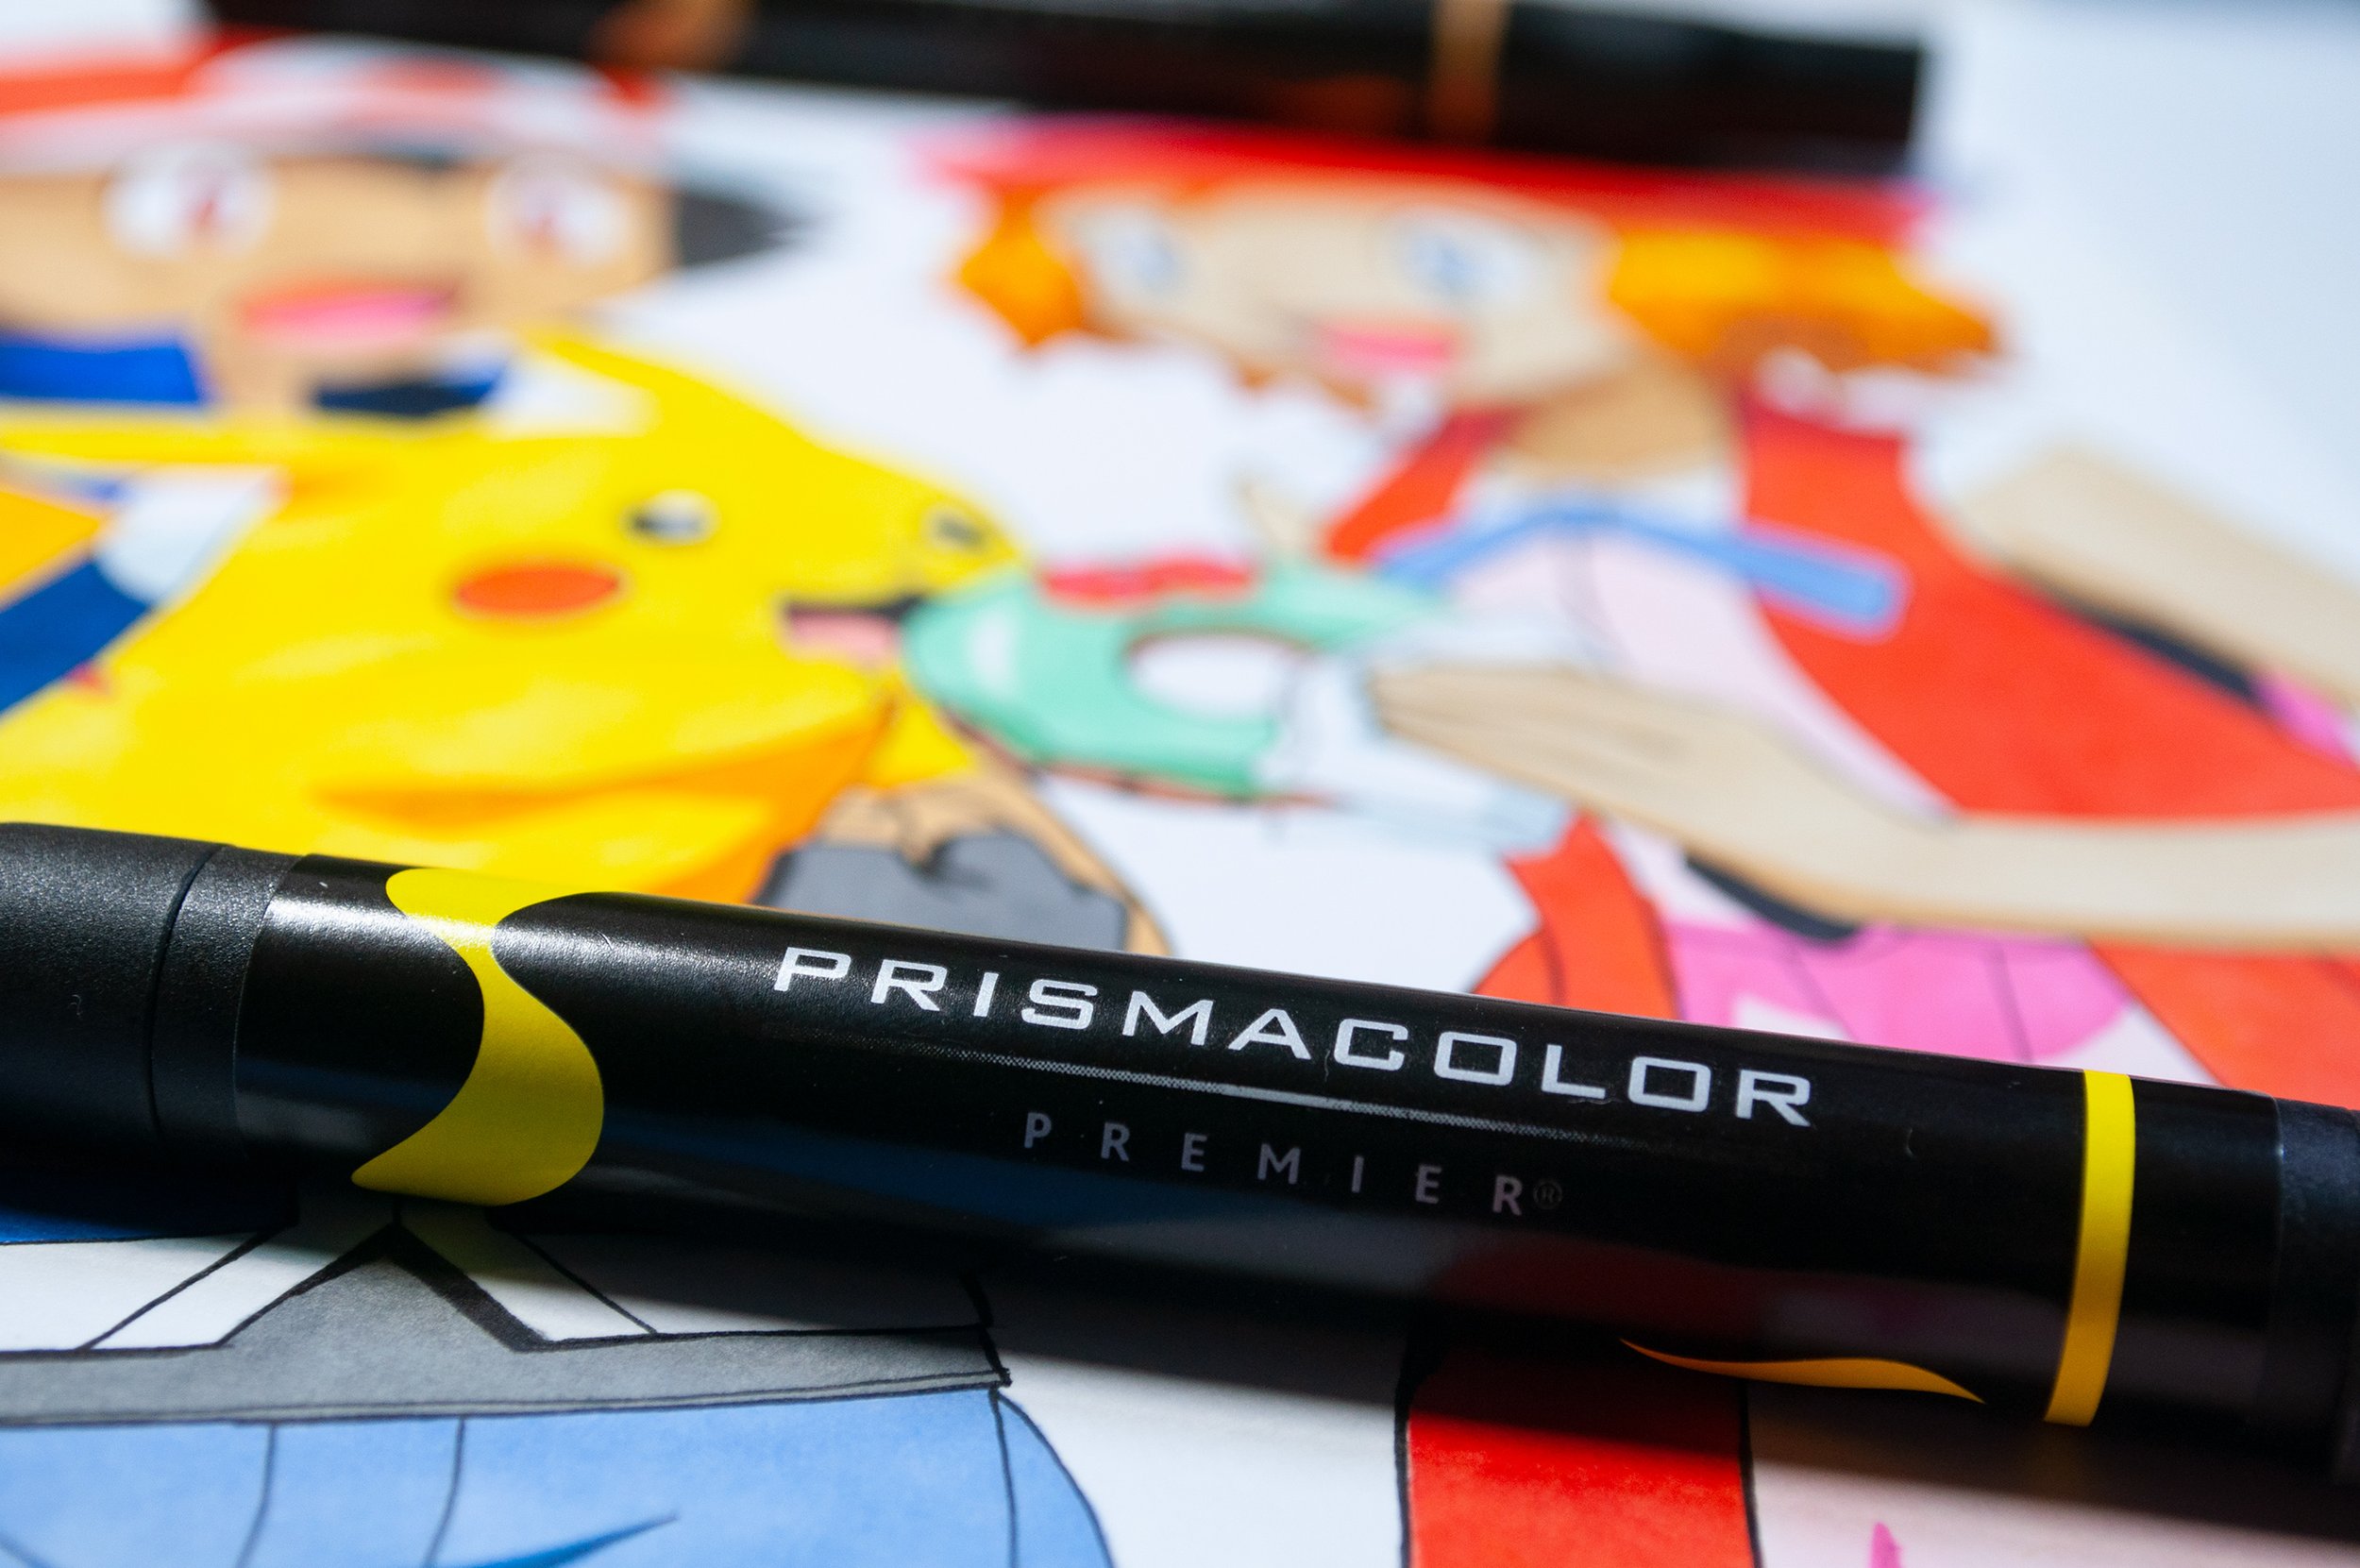 Prismacolor Premier Marker Review — The Art Gear Guide